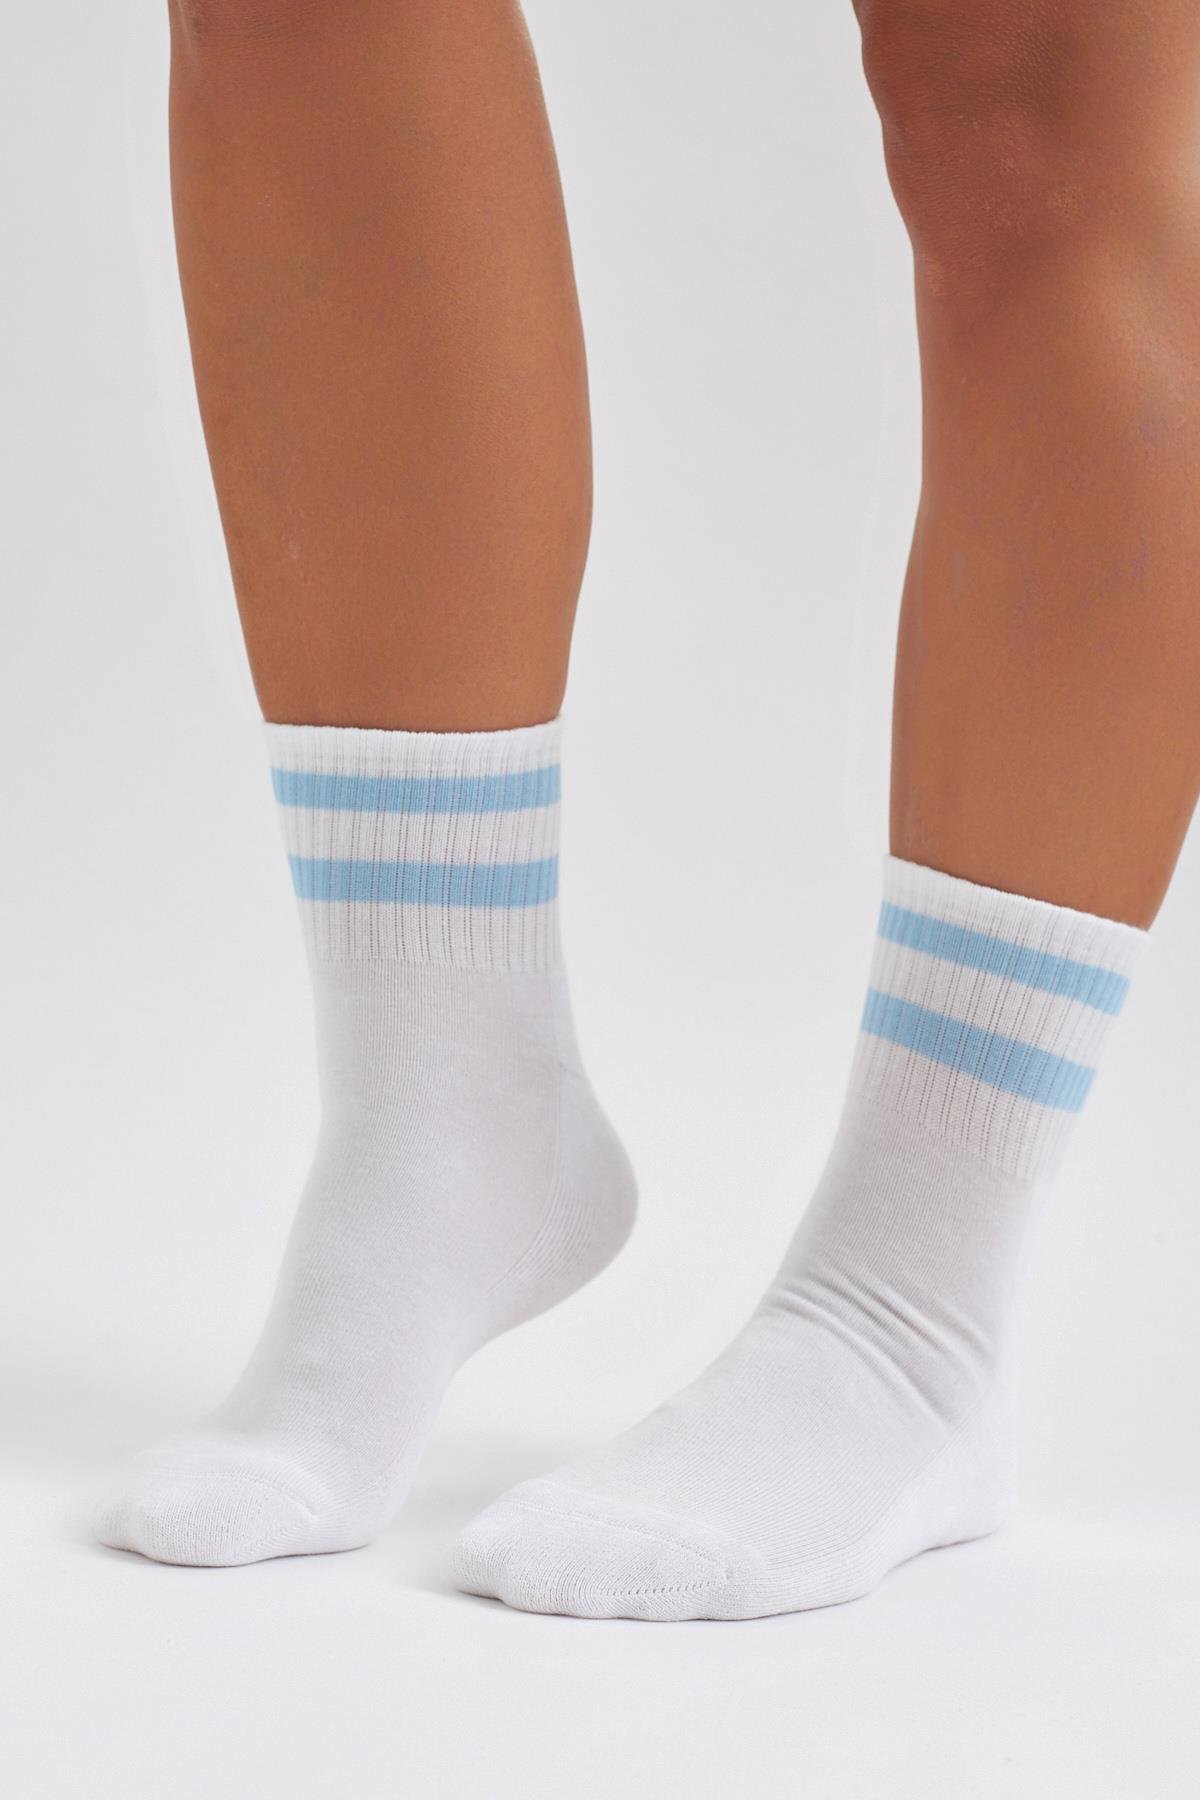 Havlu Taban Çizgili Kısa Konç Erkek Soket Çorap Beyaz MAVİ